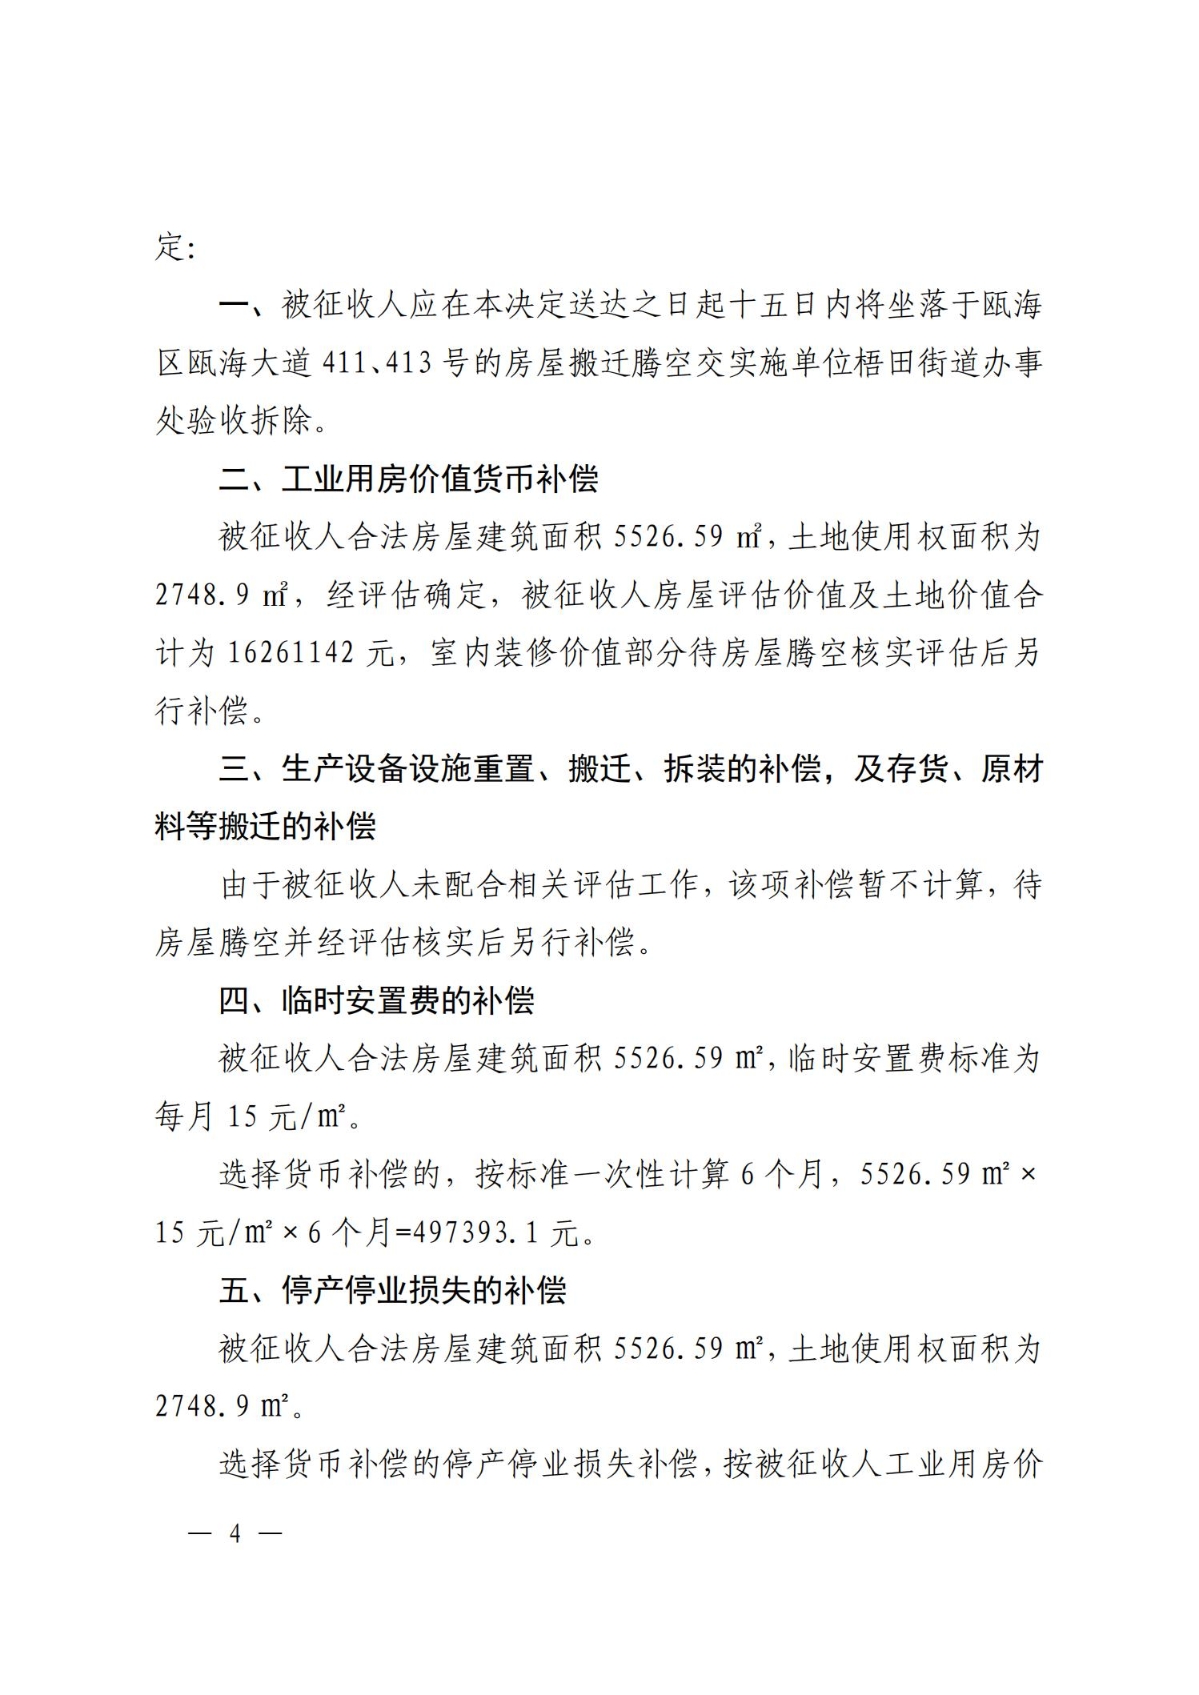 关于对温州市中超机械有限公司房屋的补偿决定(1)(1)_03.jpg